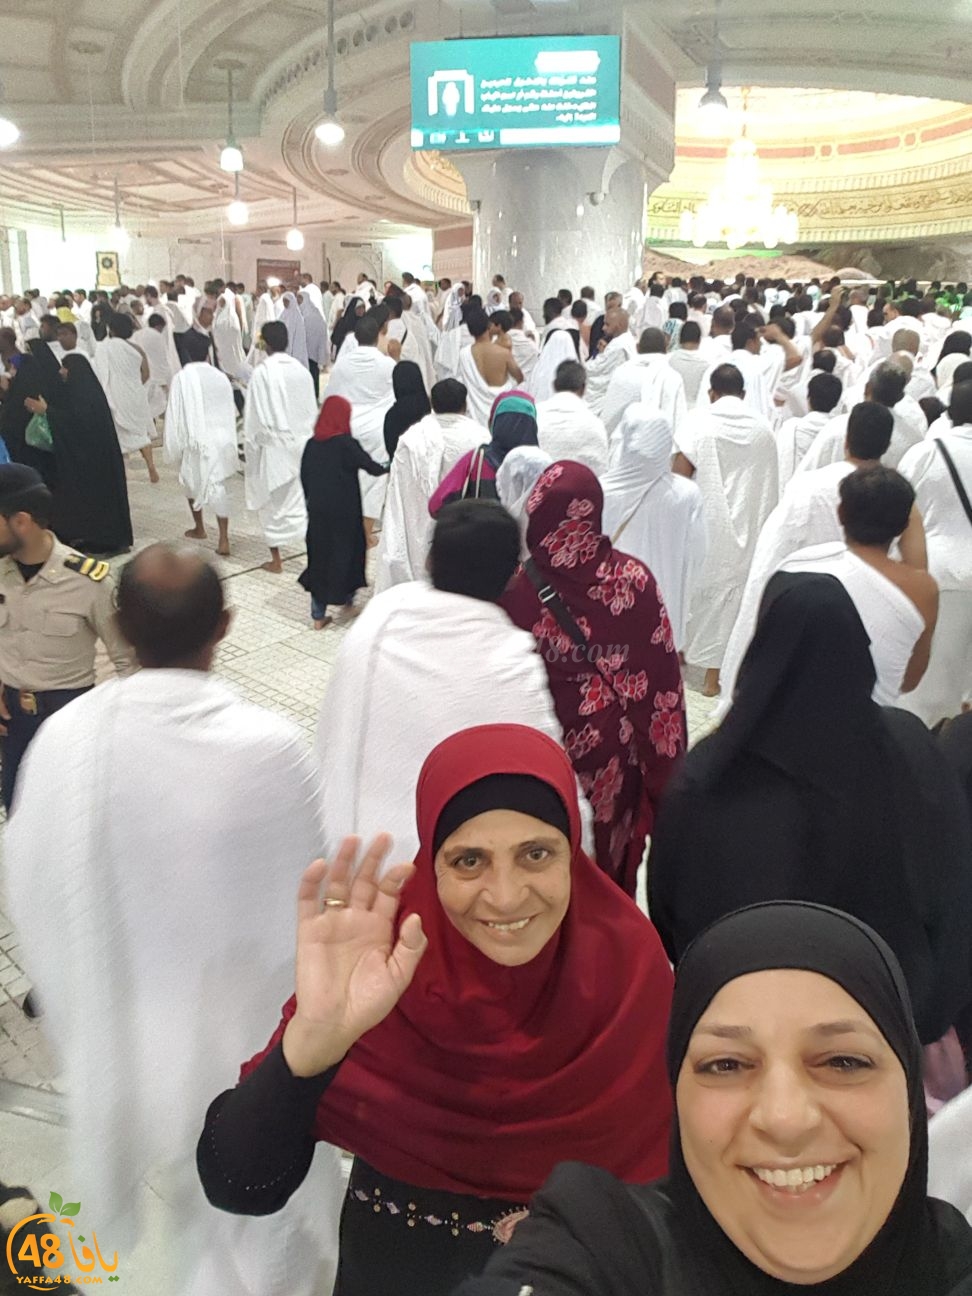  بالصور: معتمرو مدينة يافا يصلون إلى مكة المكرّمة ويؤدون عمرة الربيع